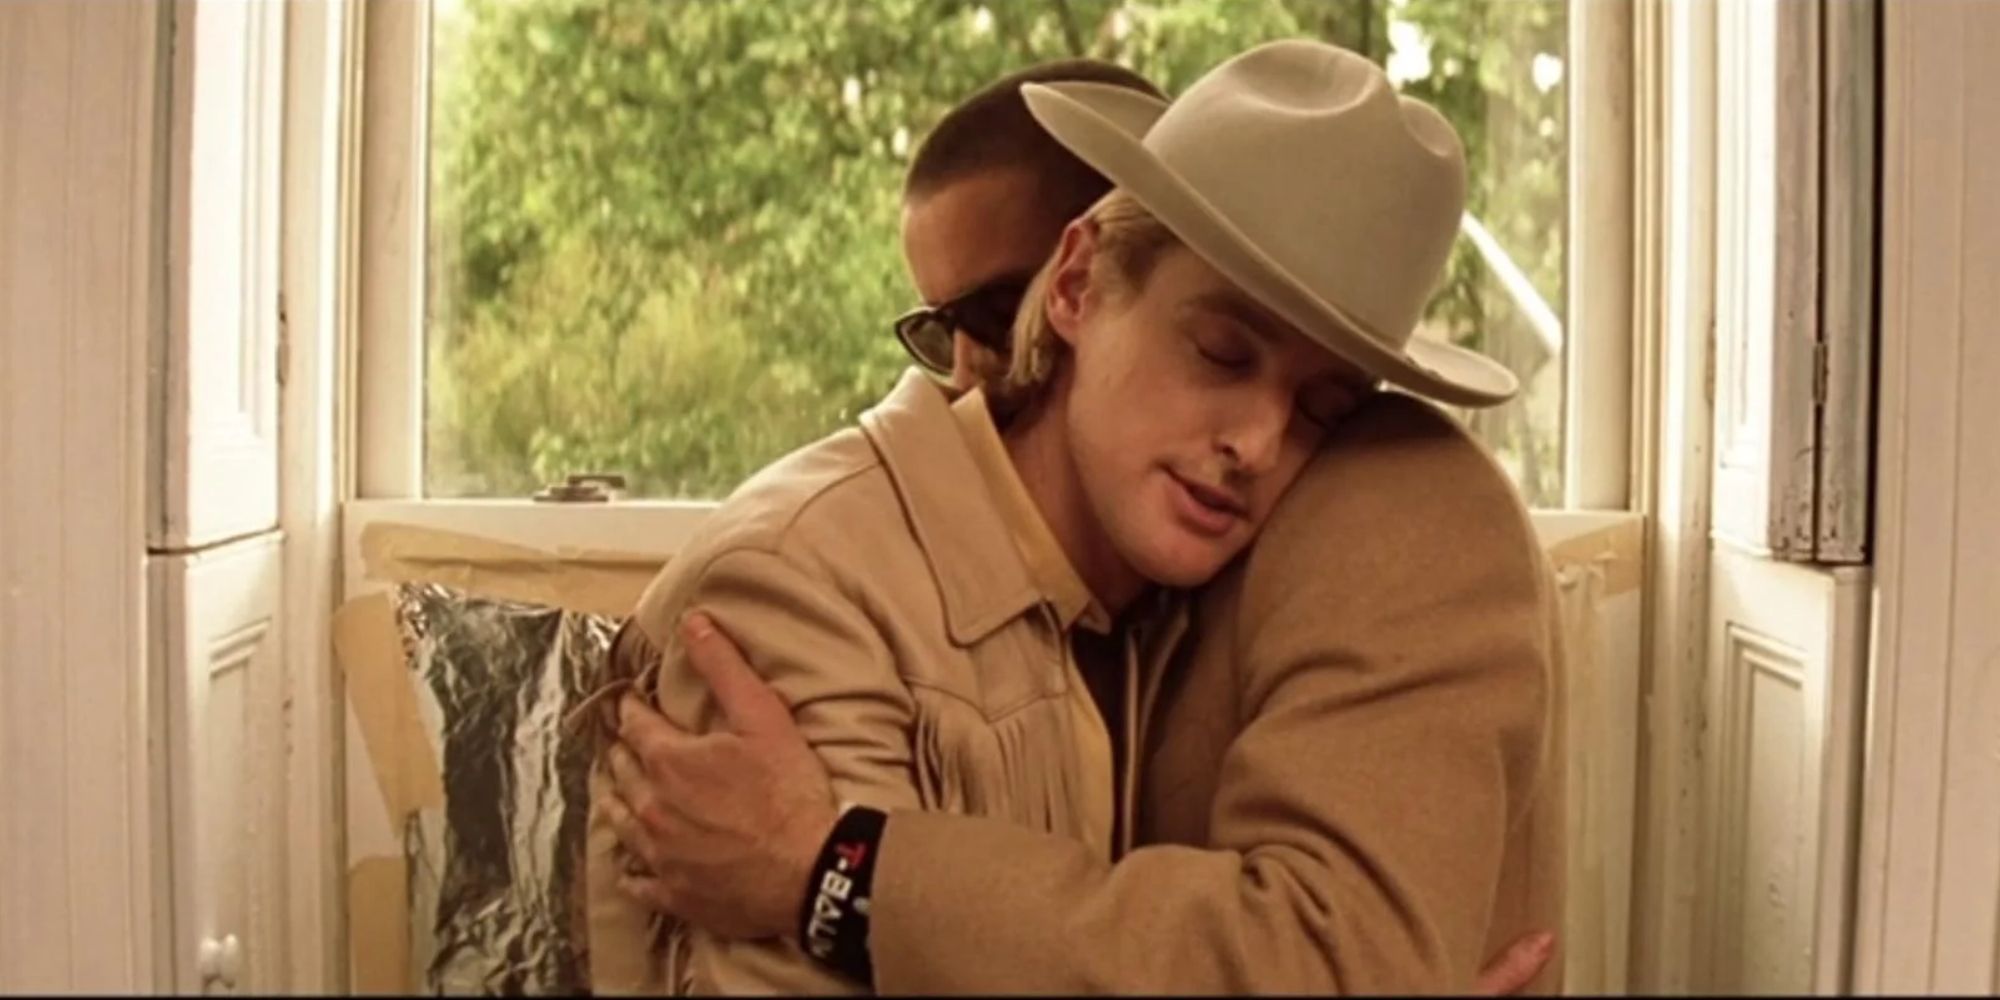 Owen Wilson and Luke Wilson hug in The Royal Tenenbaums